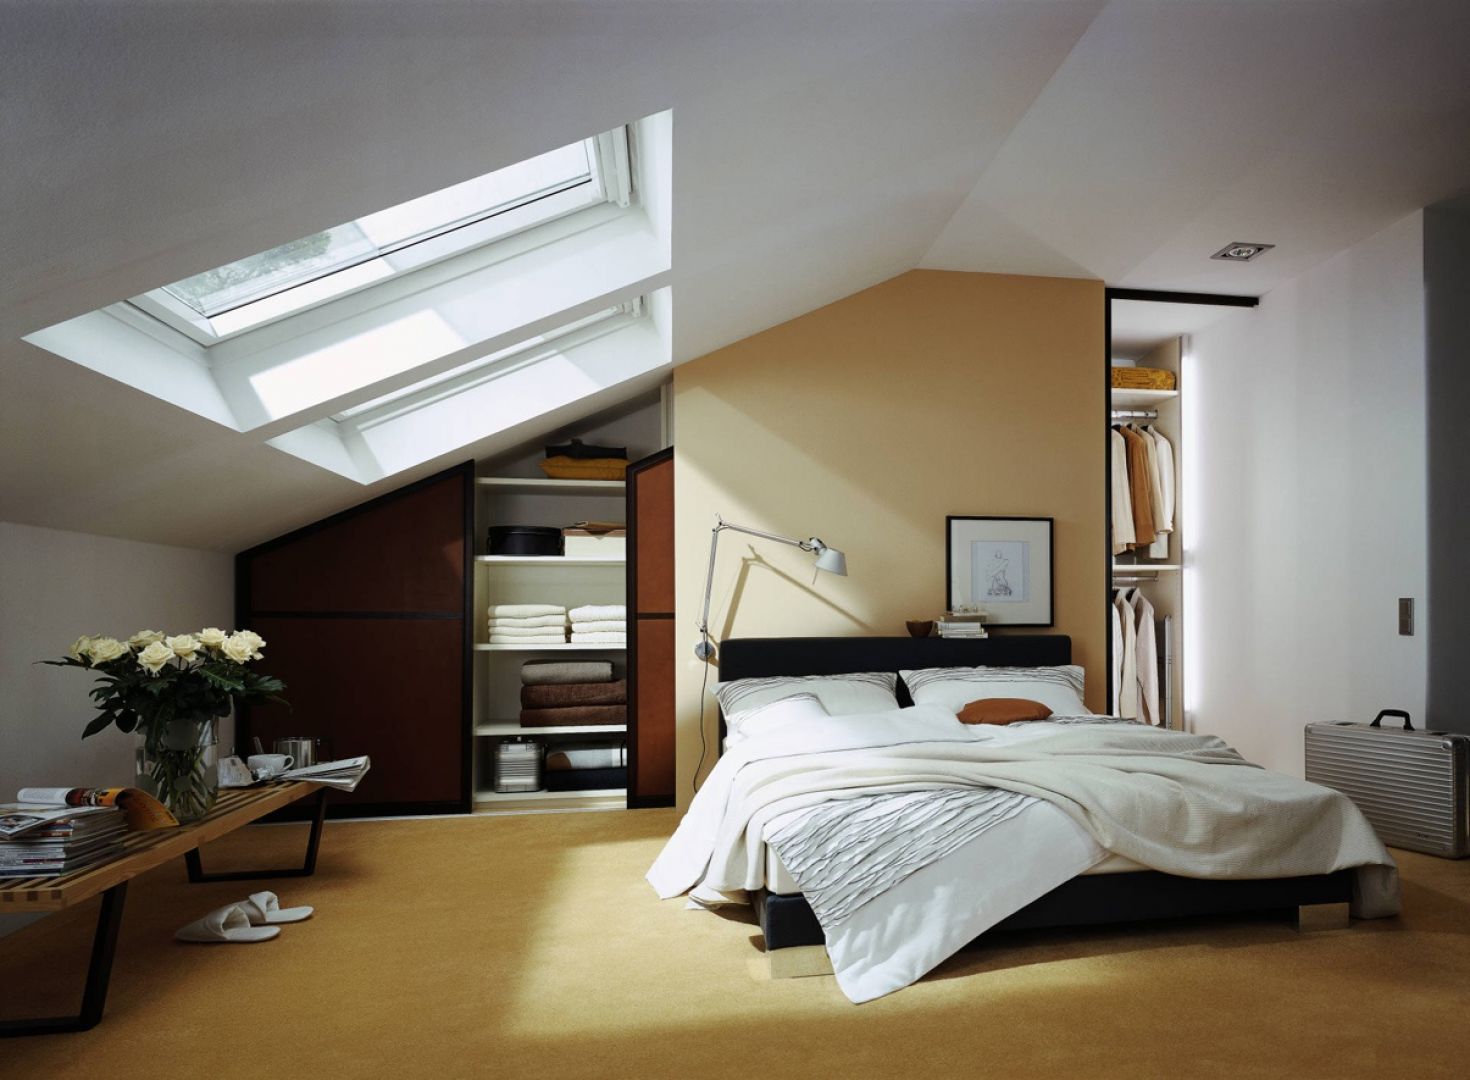 Sypialnia na poddaszu, gdzie skosy nie pozwalają na wstawienie klasycznych mebli, jest idealnym miejscem na garderobę. Fot. Raumplus